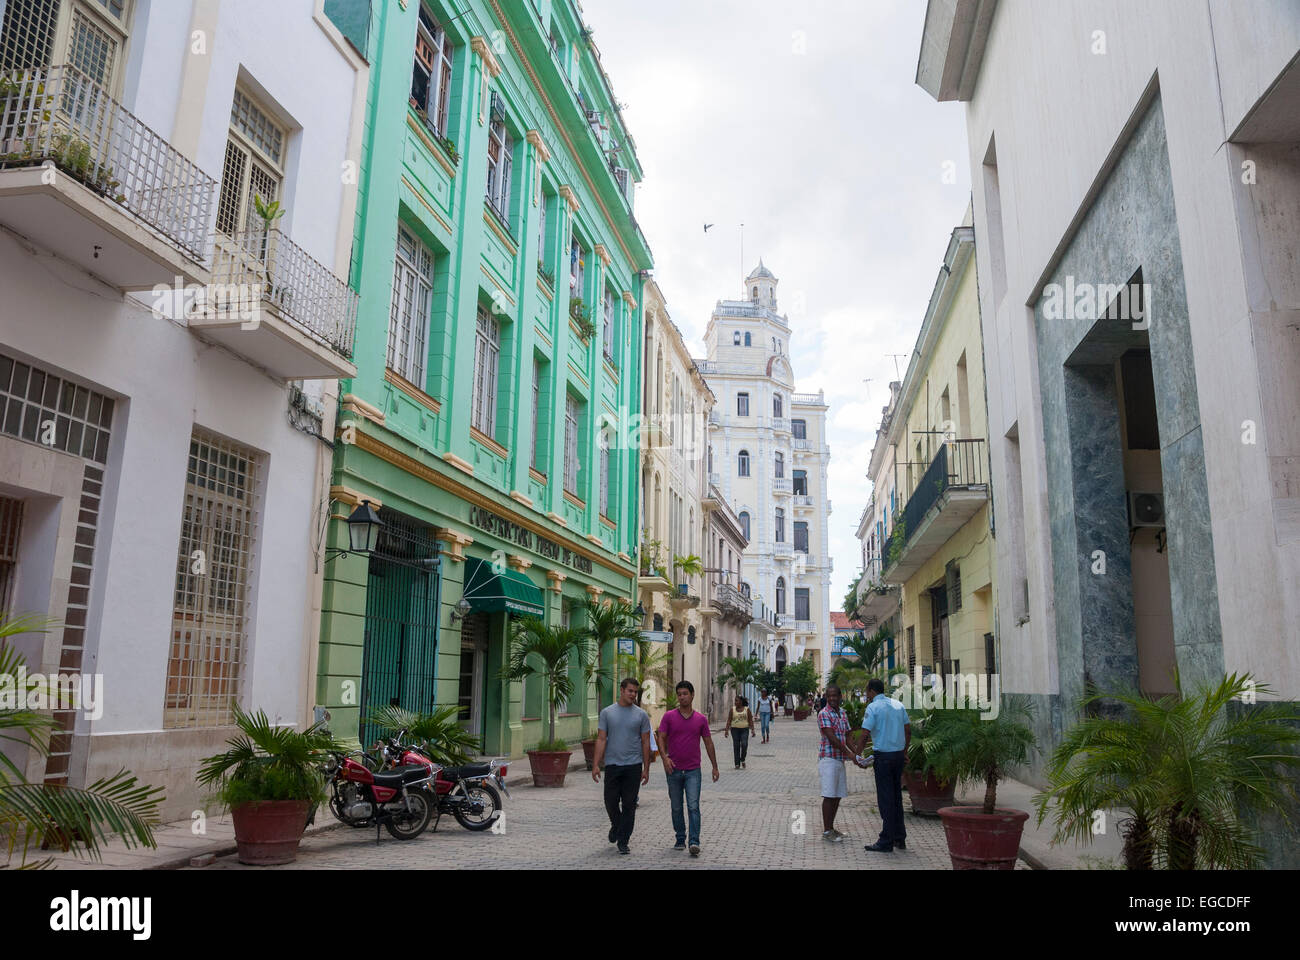 Une scène de rue du centre-ville dans la vieille partie du centre de la Havane Cuba avec des touristes et des habitants admirant les bâtiments coloniaux restaurés et les rues étroites. Banque D'Images